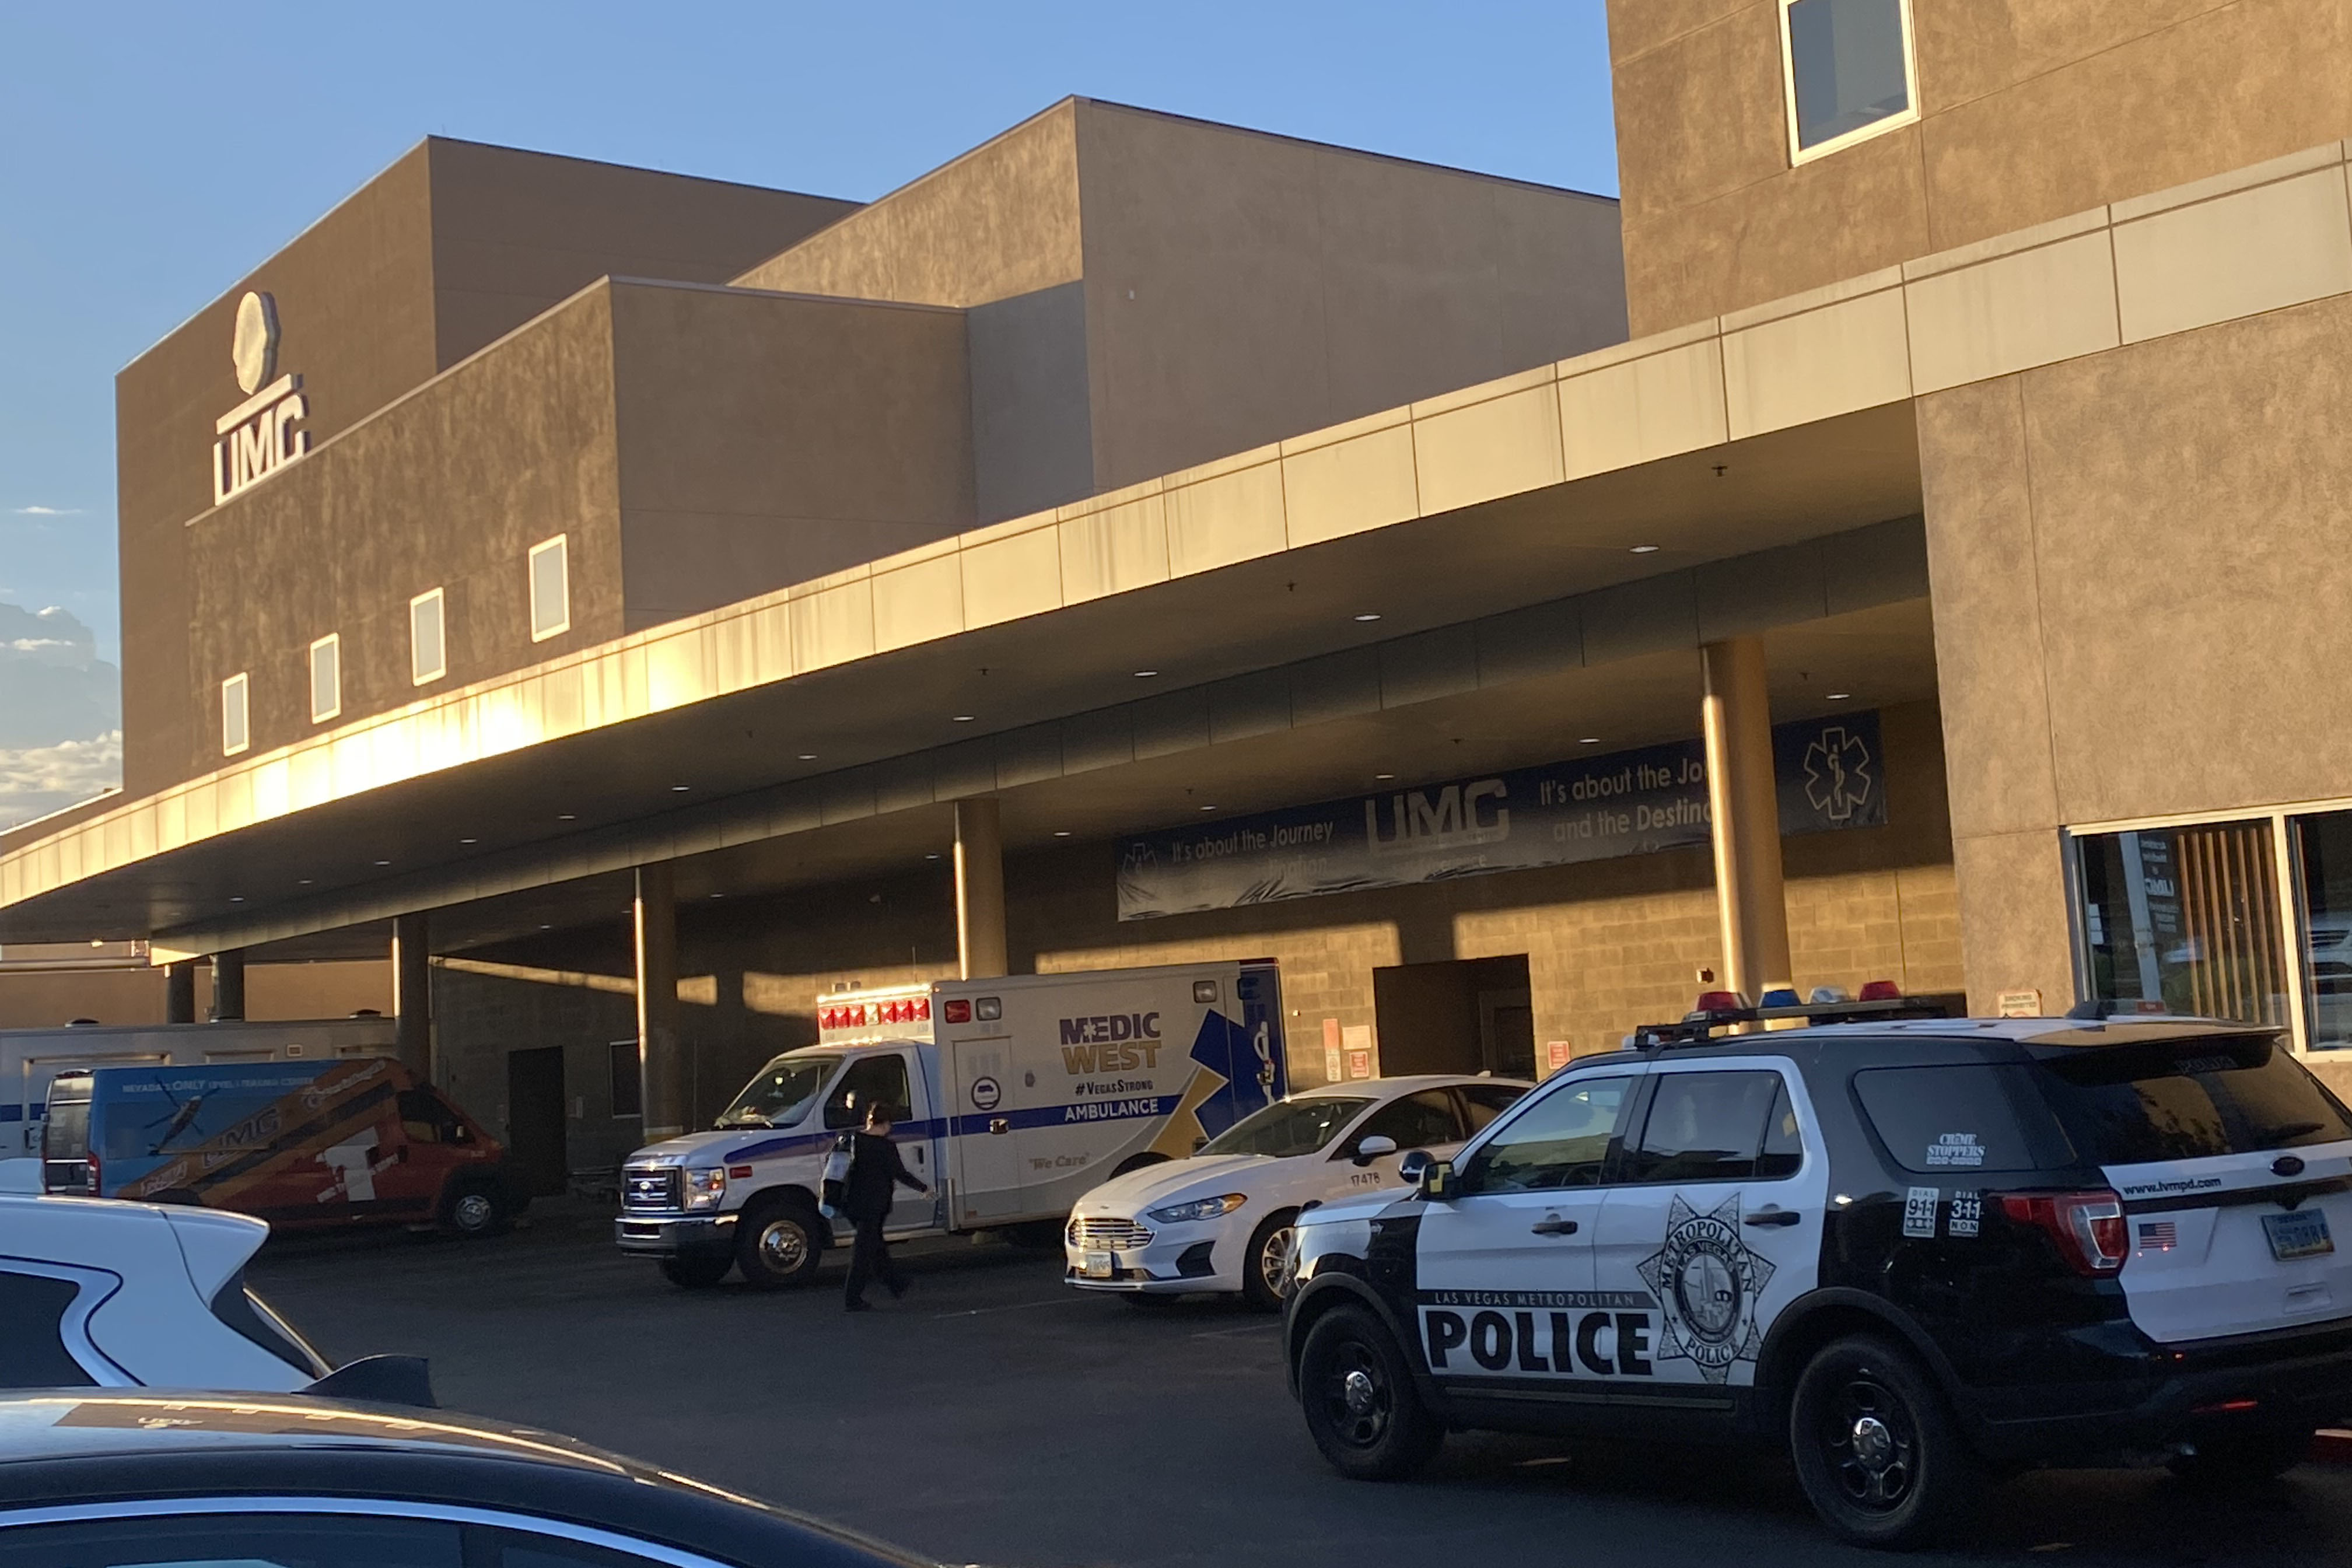 Pasien RS UMC menusuk 2 pasien lainnya, menewaskan 1 orang